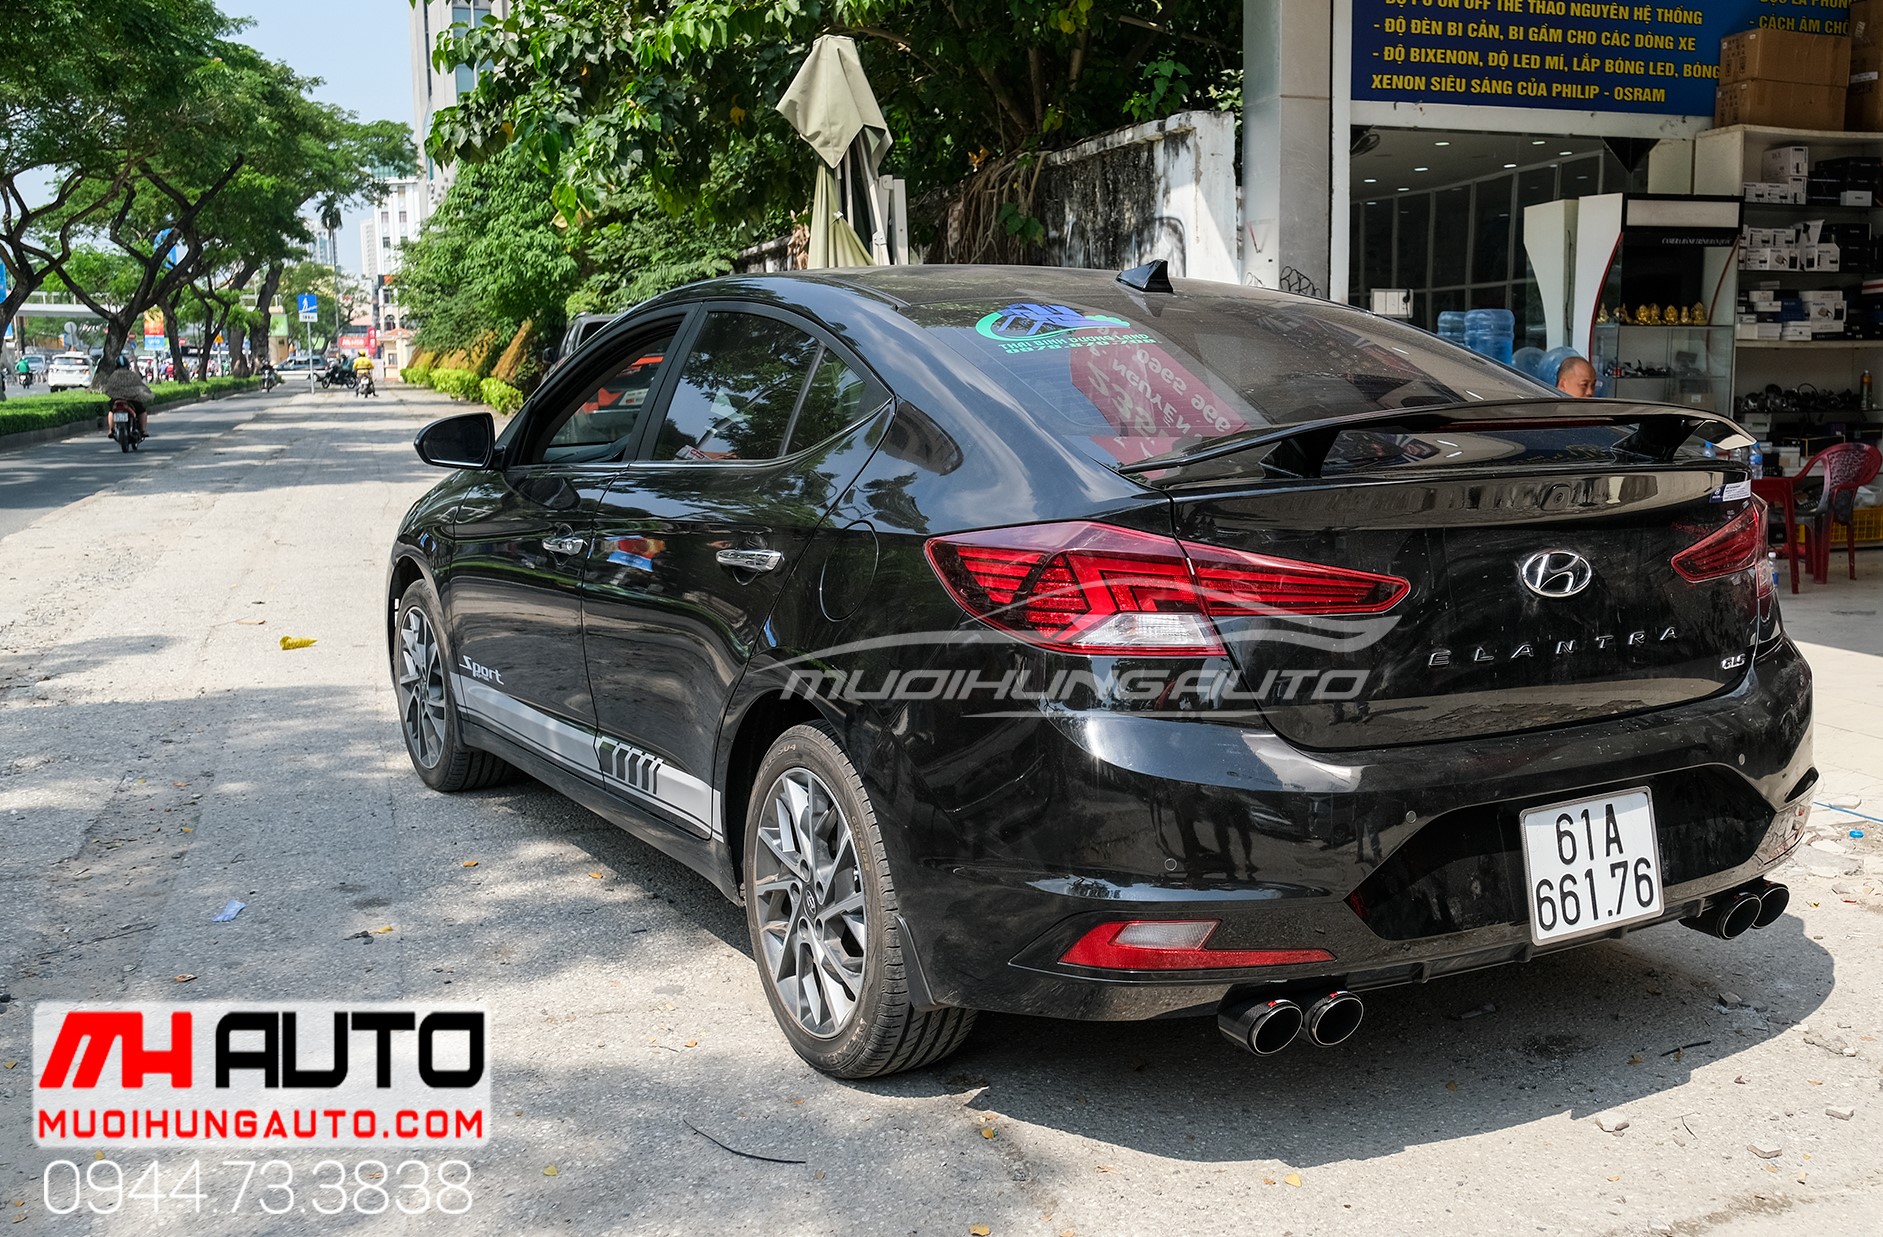 Gắn đuôi cá có đèn cho xe Hyundai Elantra 2019